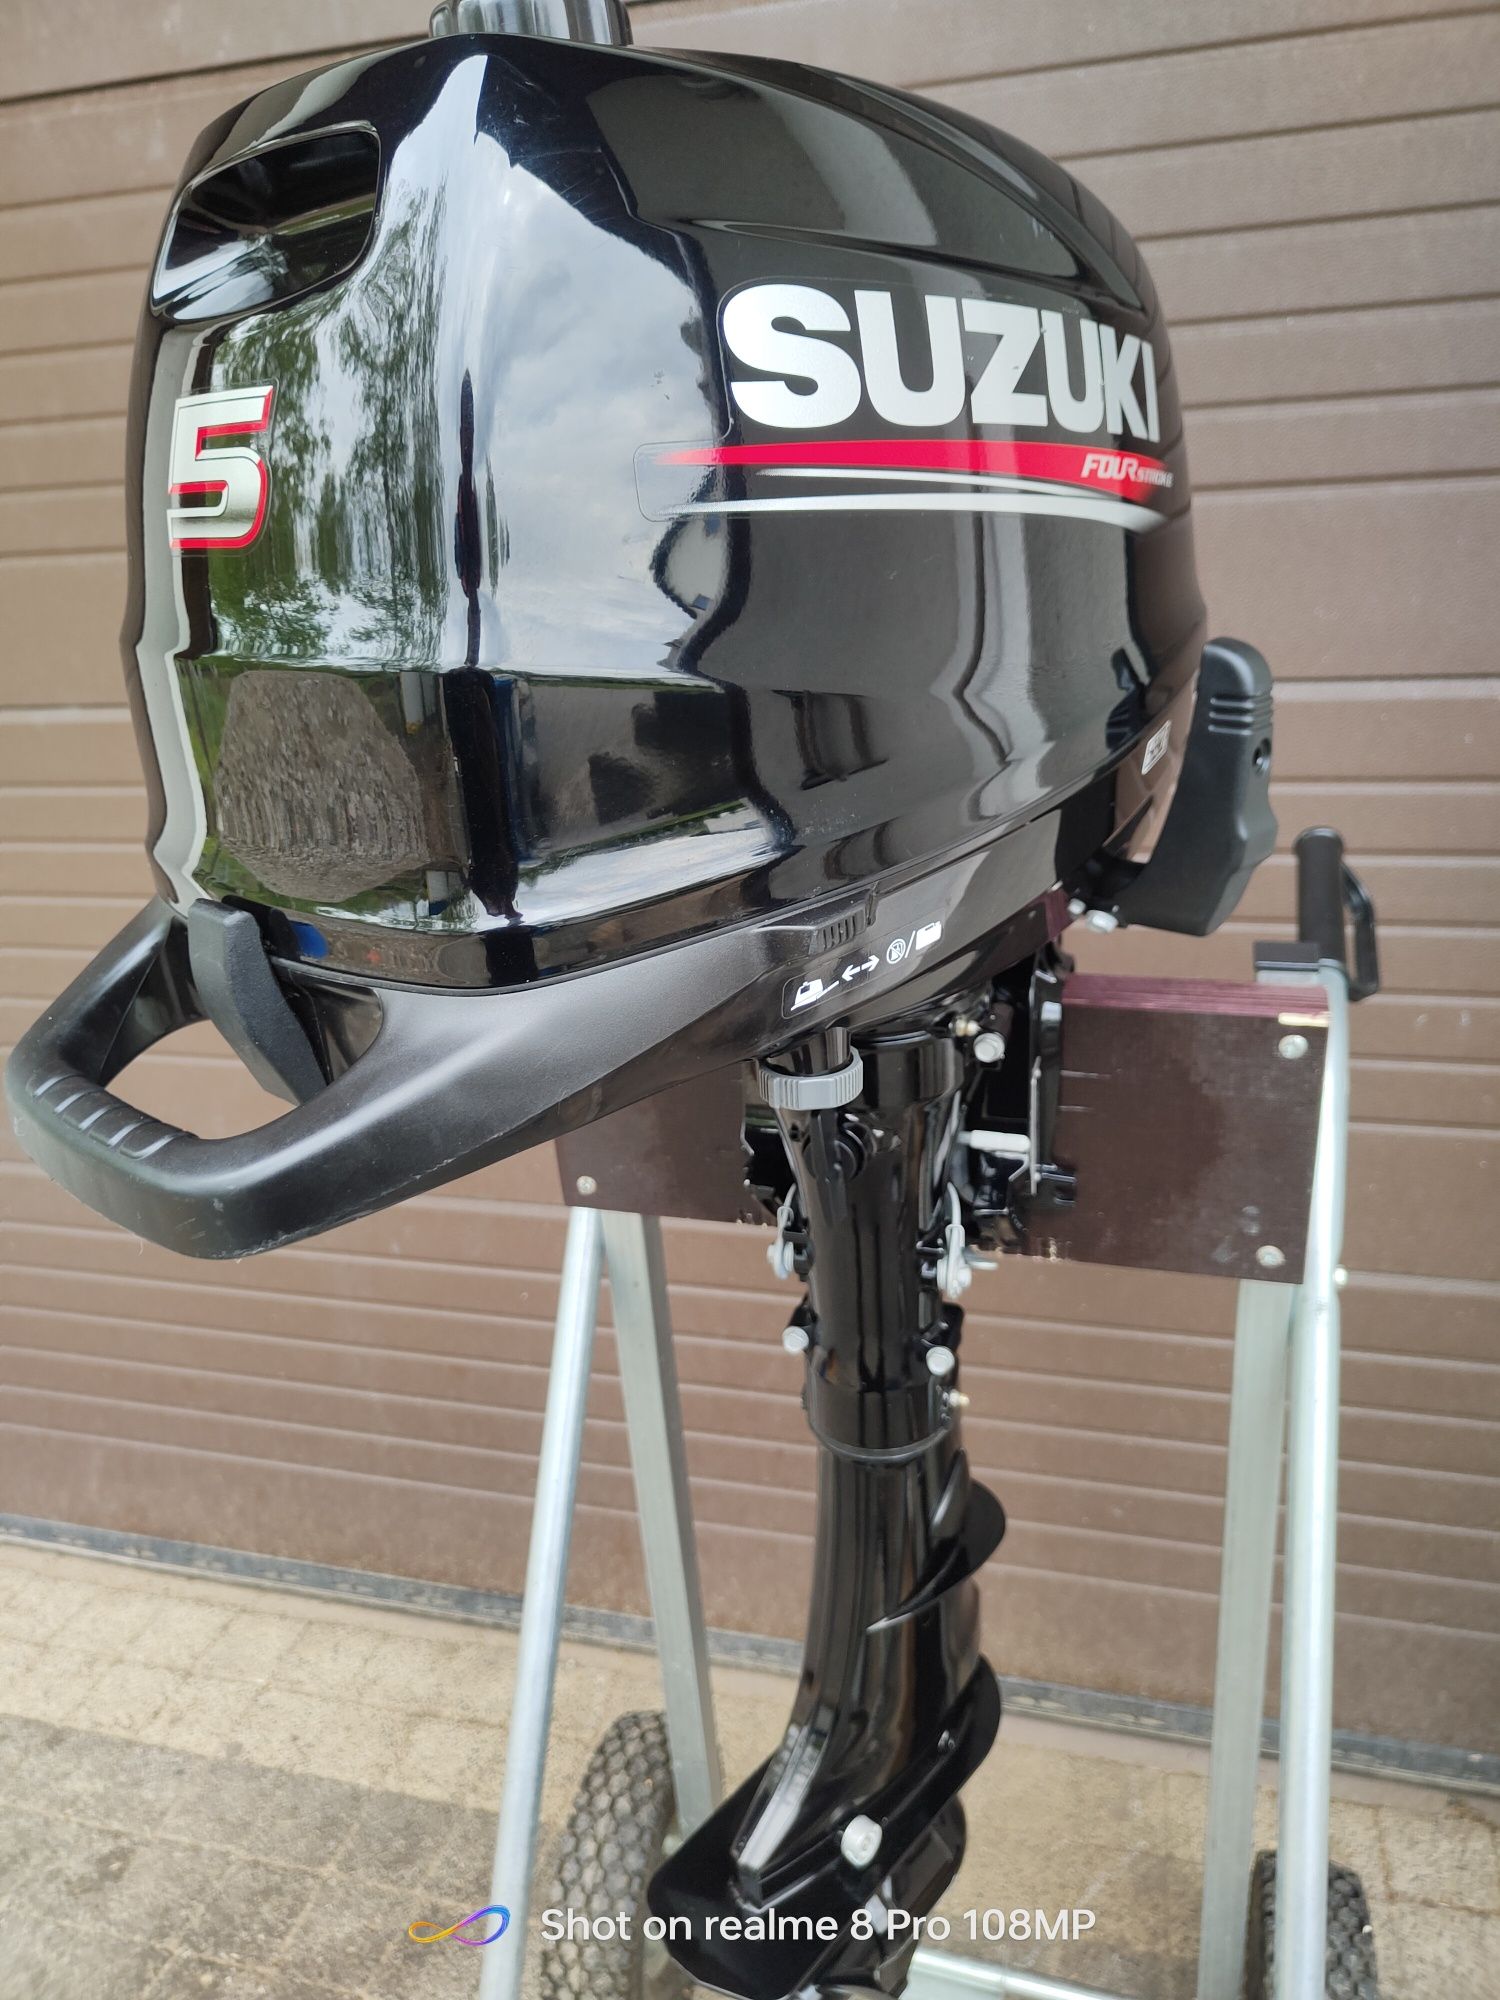 Silnik zaburtowy Suzuki 5 Stopa S krótka,jak nowy